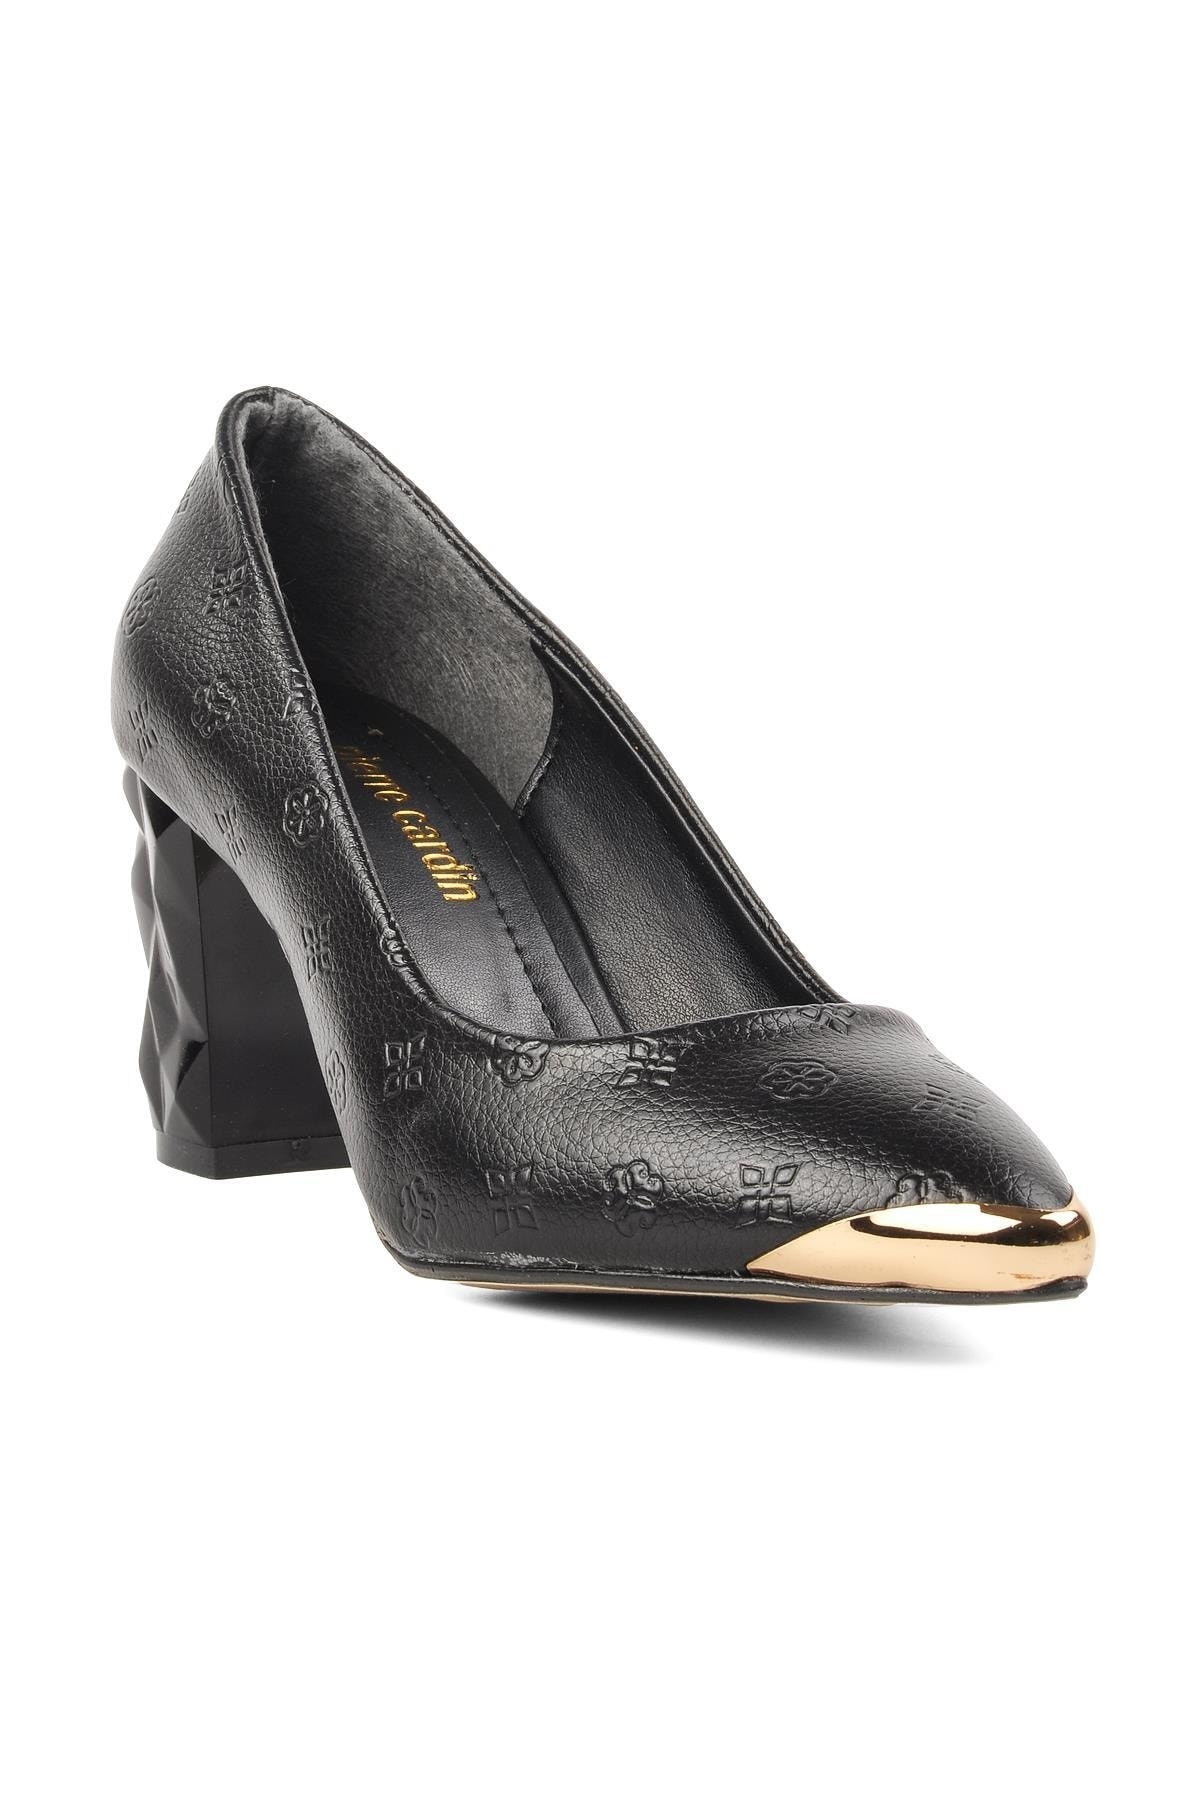 Pierre Cardin Pc-51752 Siyah-altın Kadın Topuklu Ayakkabı